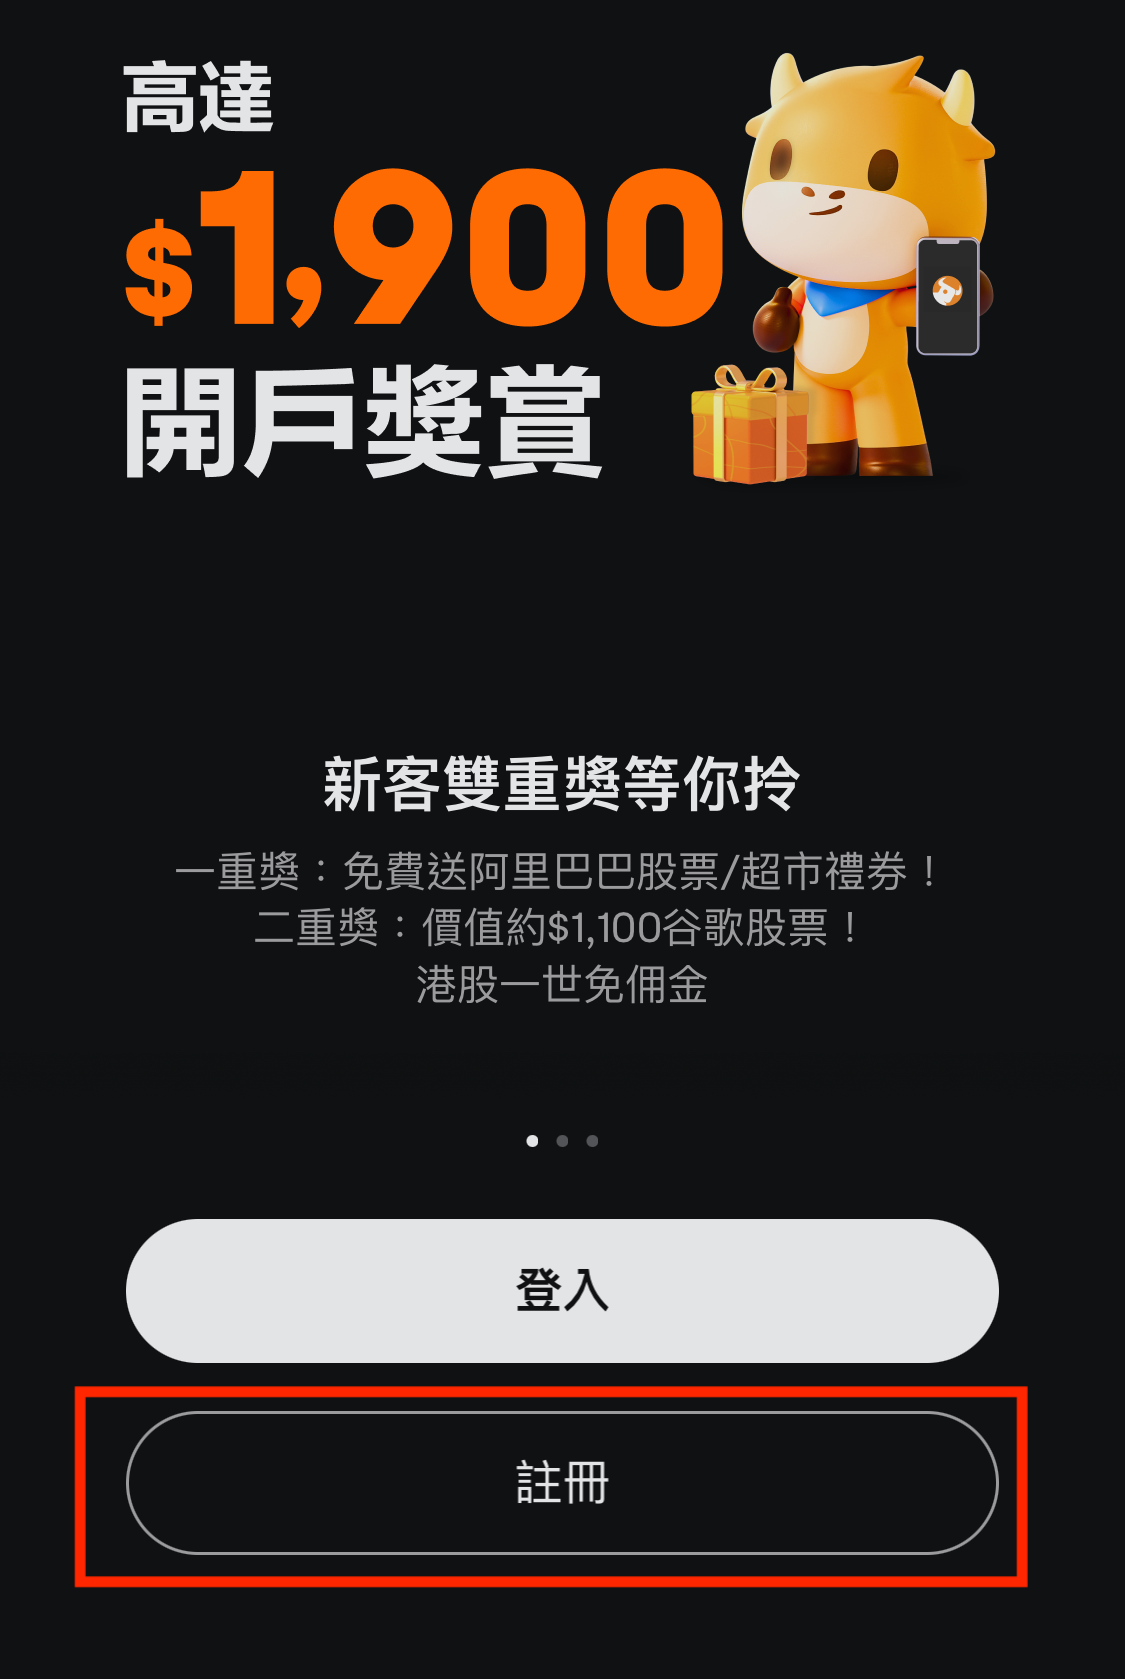 【富途牛牛開戶優惠】毋須交易，用指定邀請碼開戶賺高達HK$2,000 Apple Gift Card/超市禮券！學生都有份!